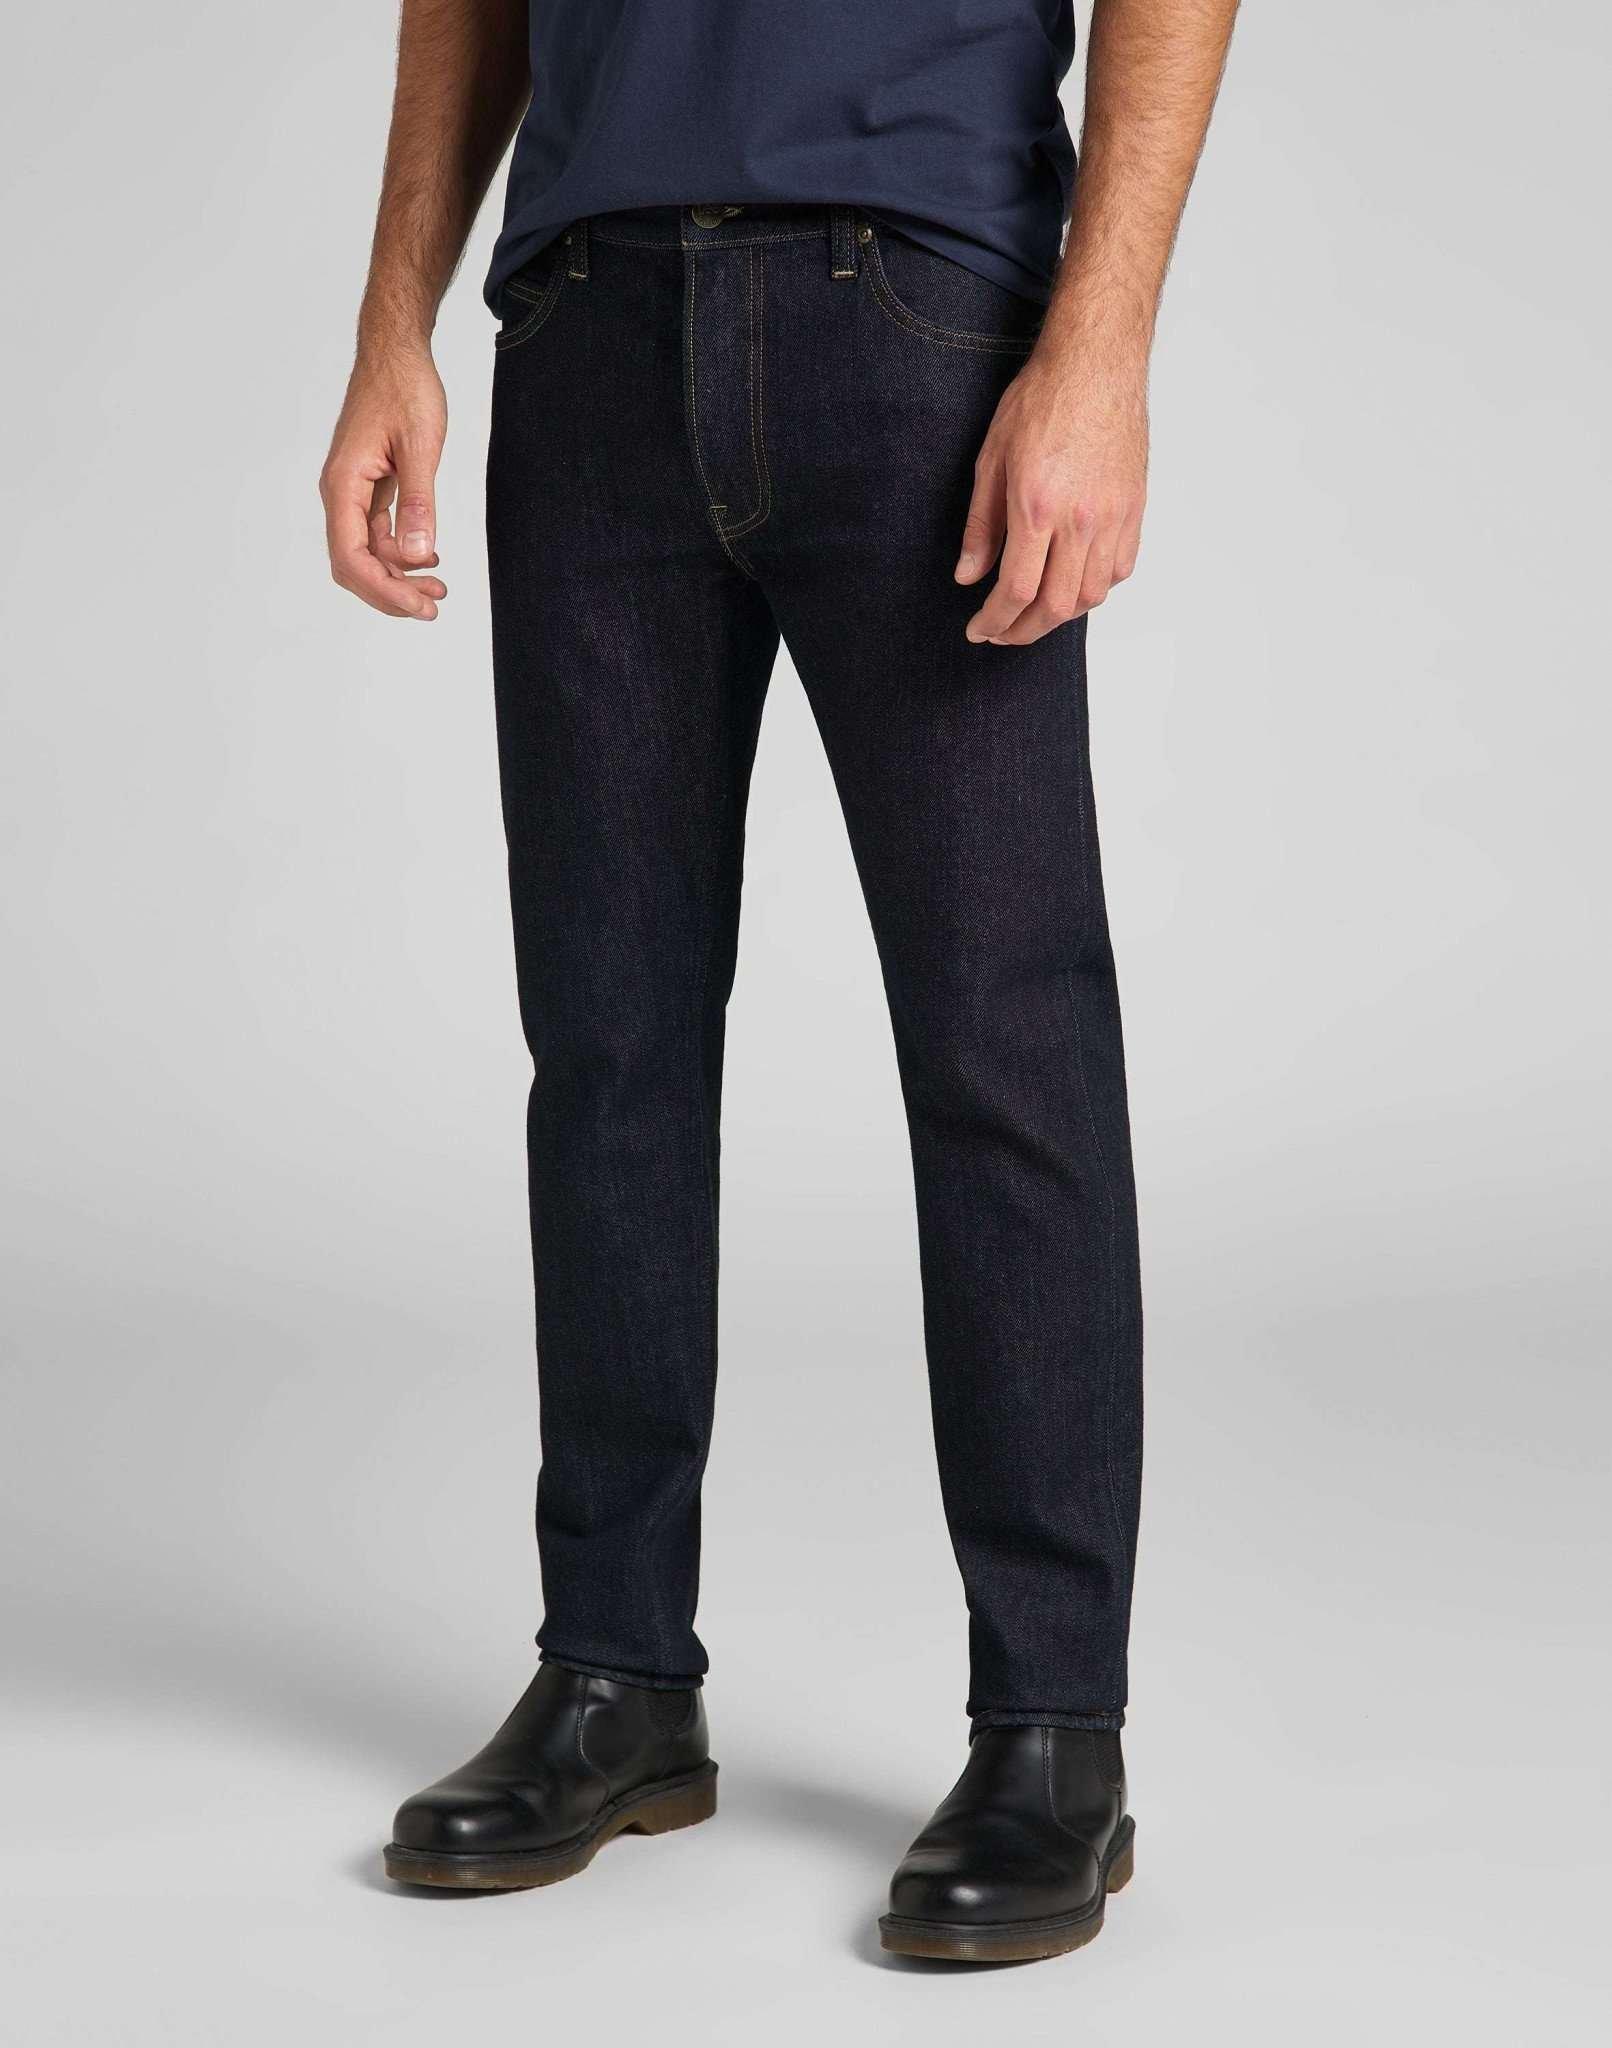 Jeans Slim Fit Rider Herren Blau Denim L30/W36 von Lee